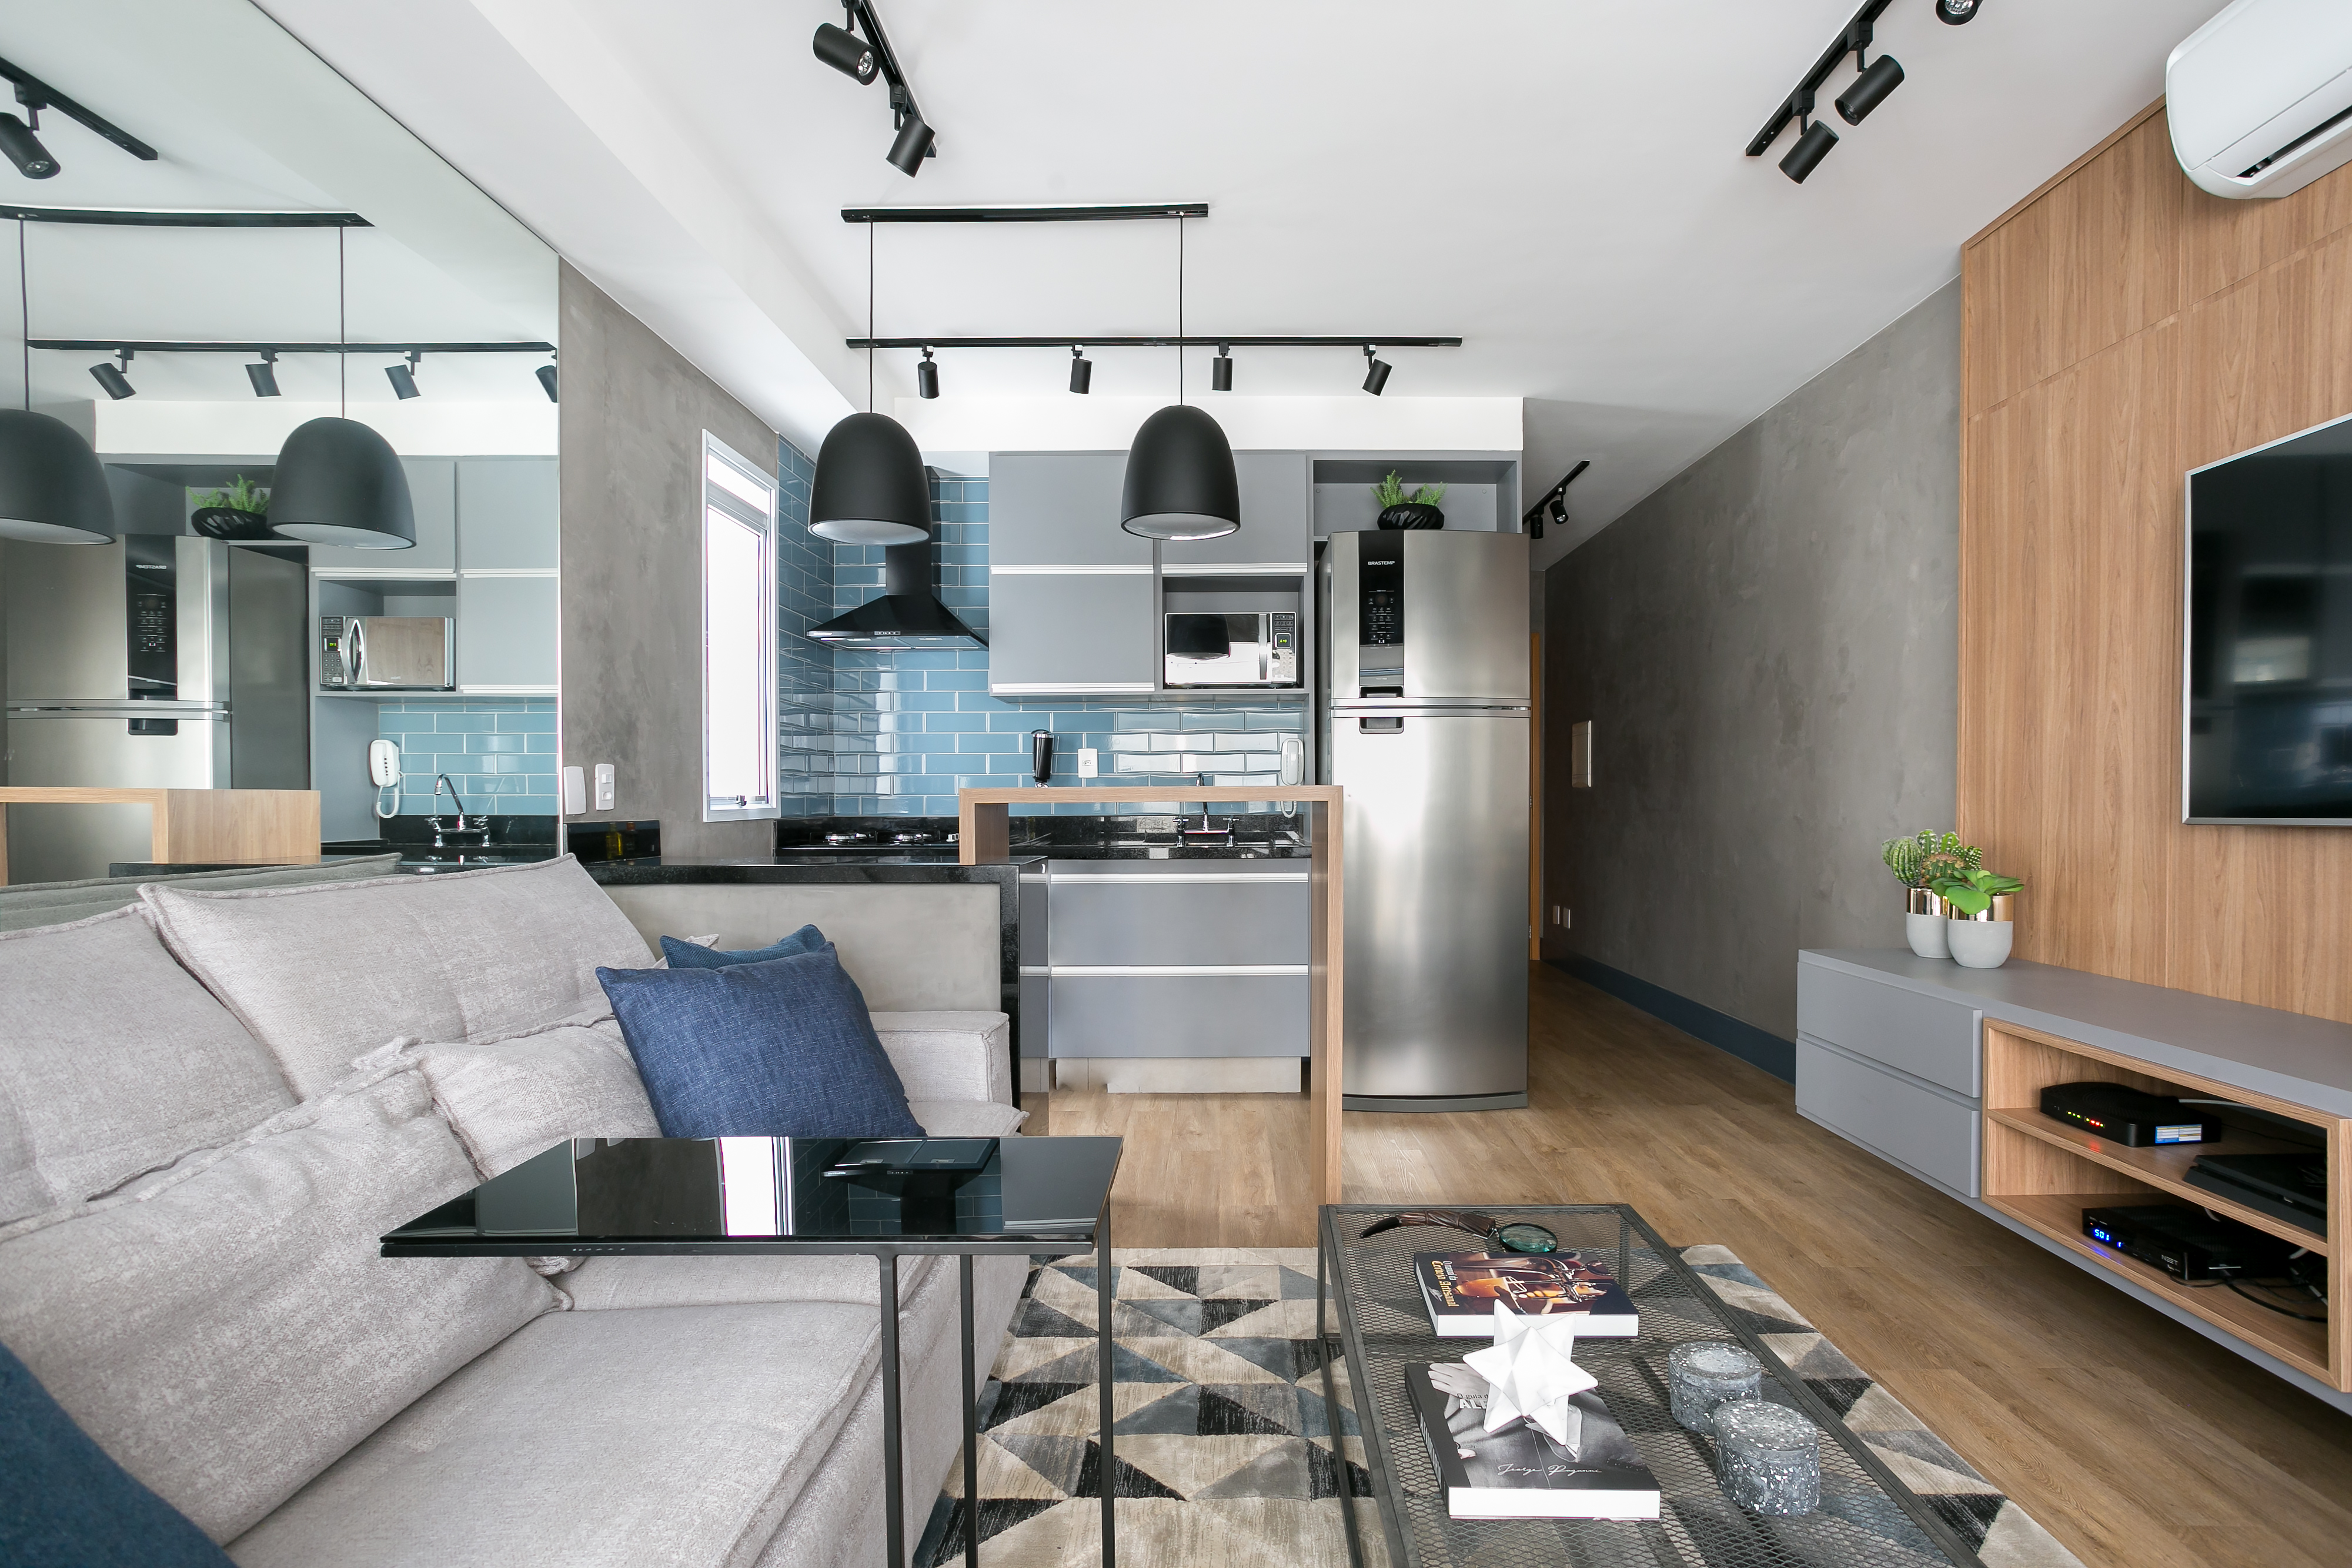  Apartemen leutik 43 m² kalayan gaya elegan industri